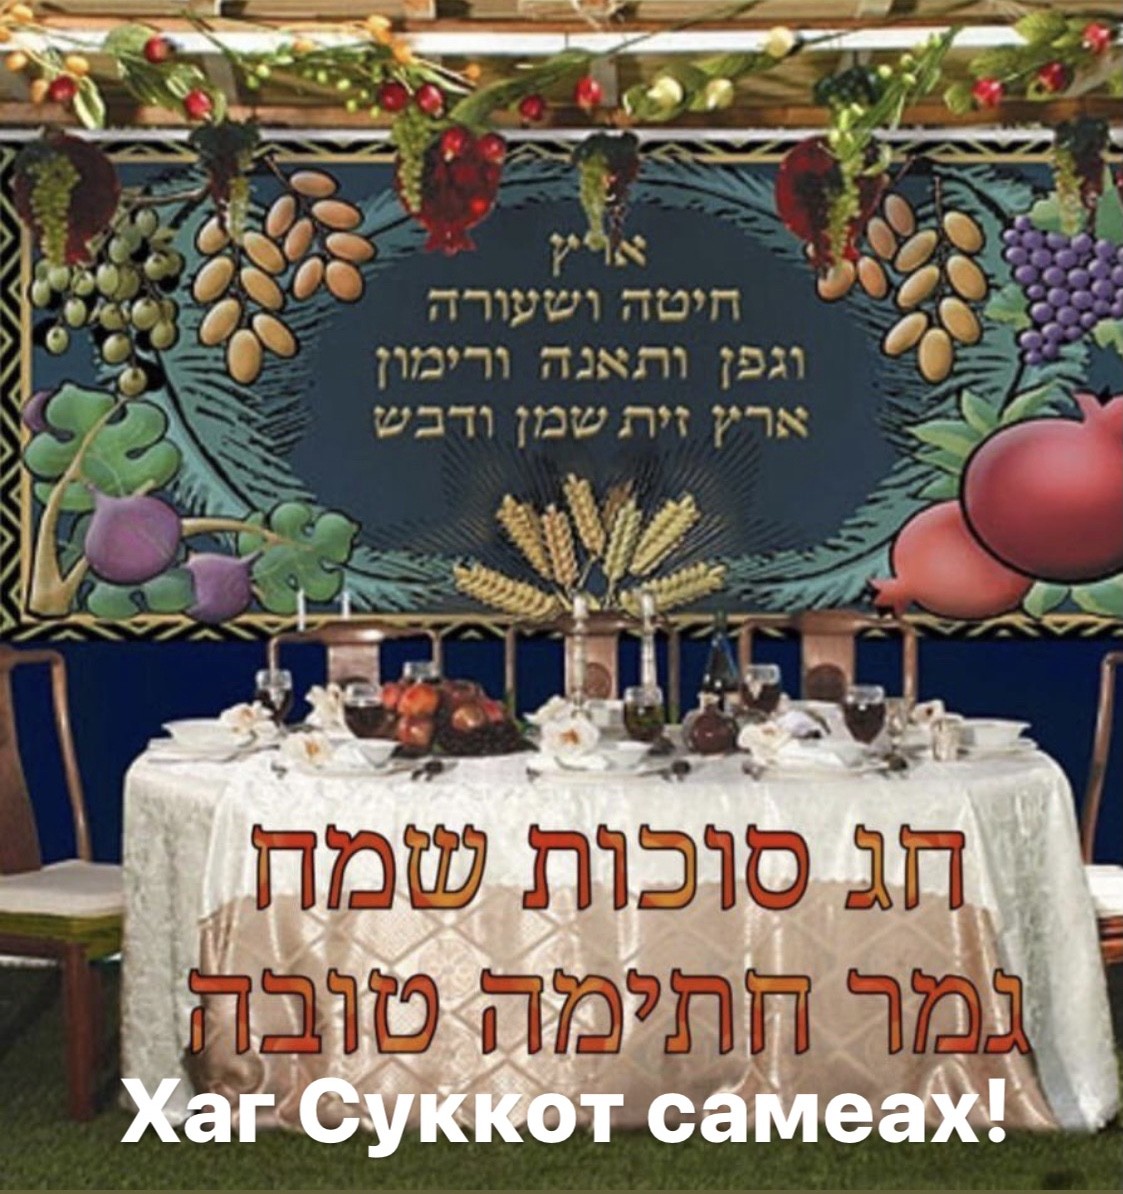 Поздравляем евреев с Праздником Суккот. В 2022 году он начинается с вечера 9 октября и заканчивается ночью 16 октября. Хаг Суккот самеах!